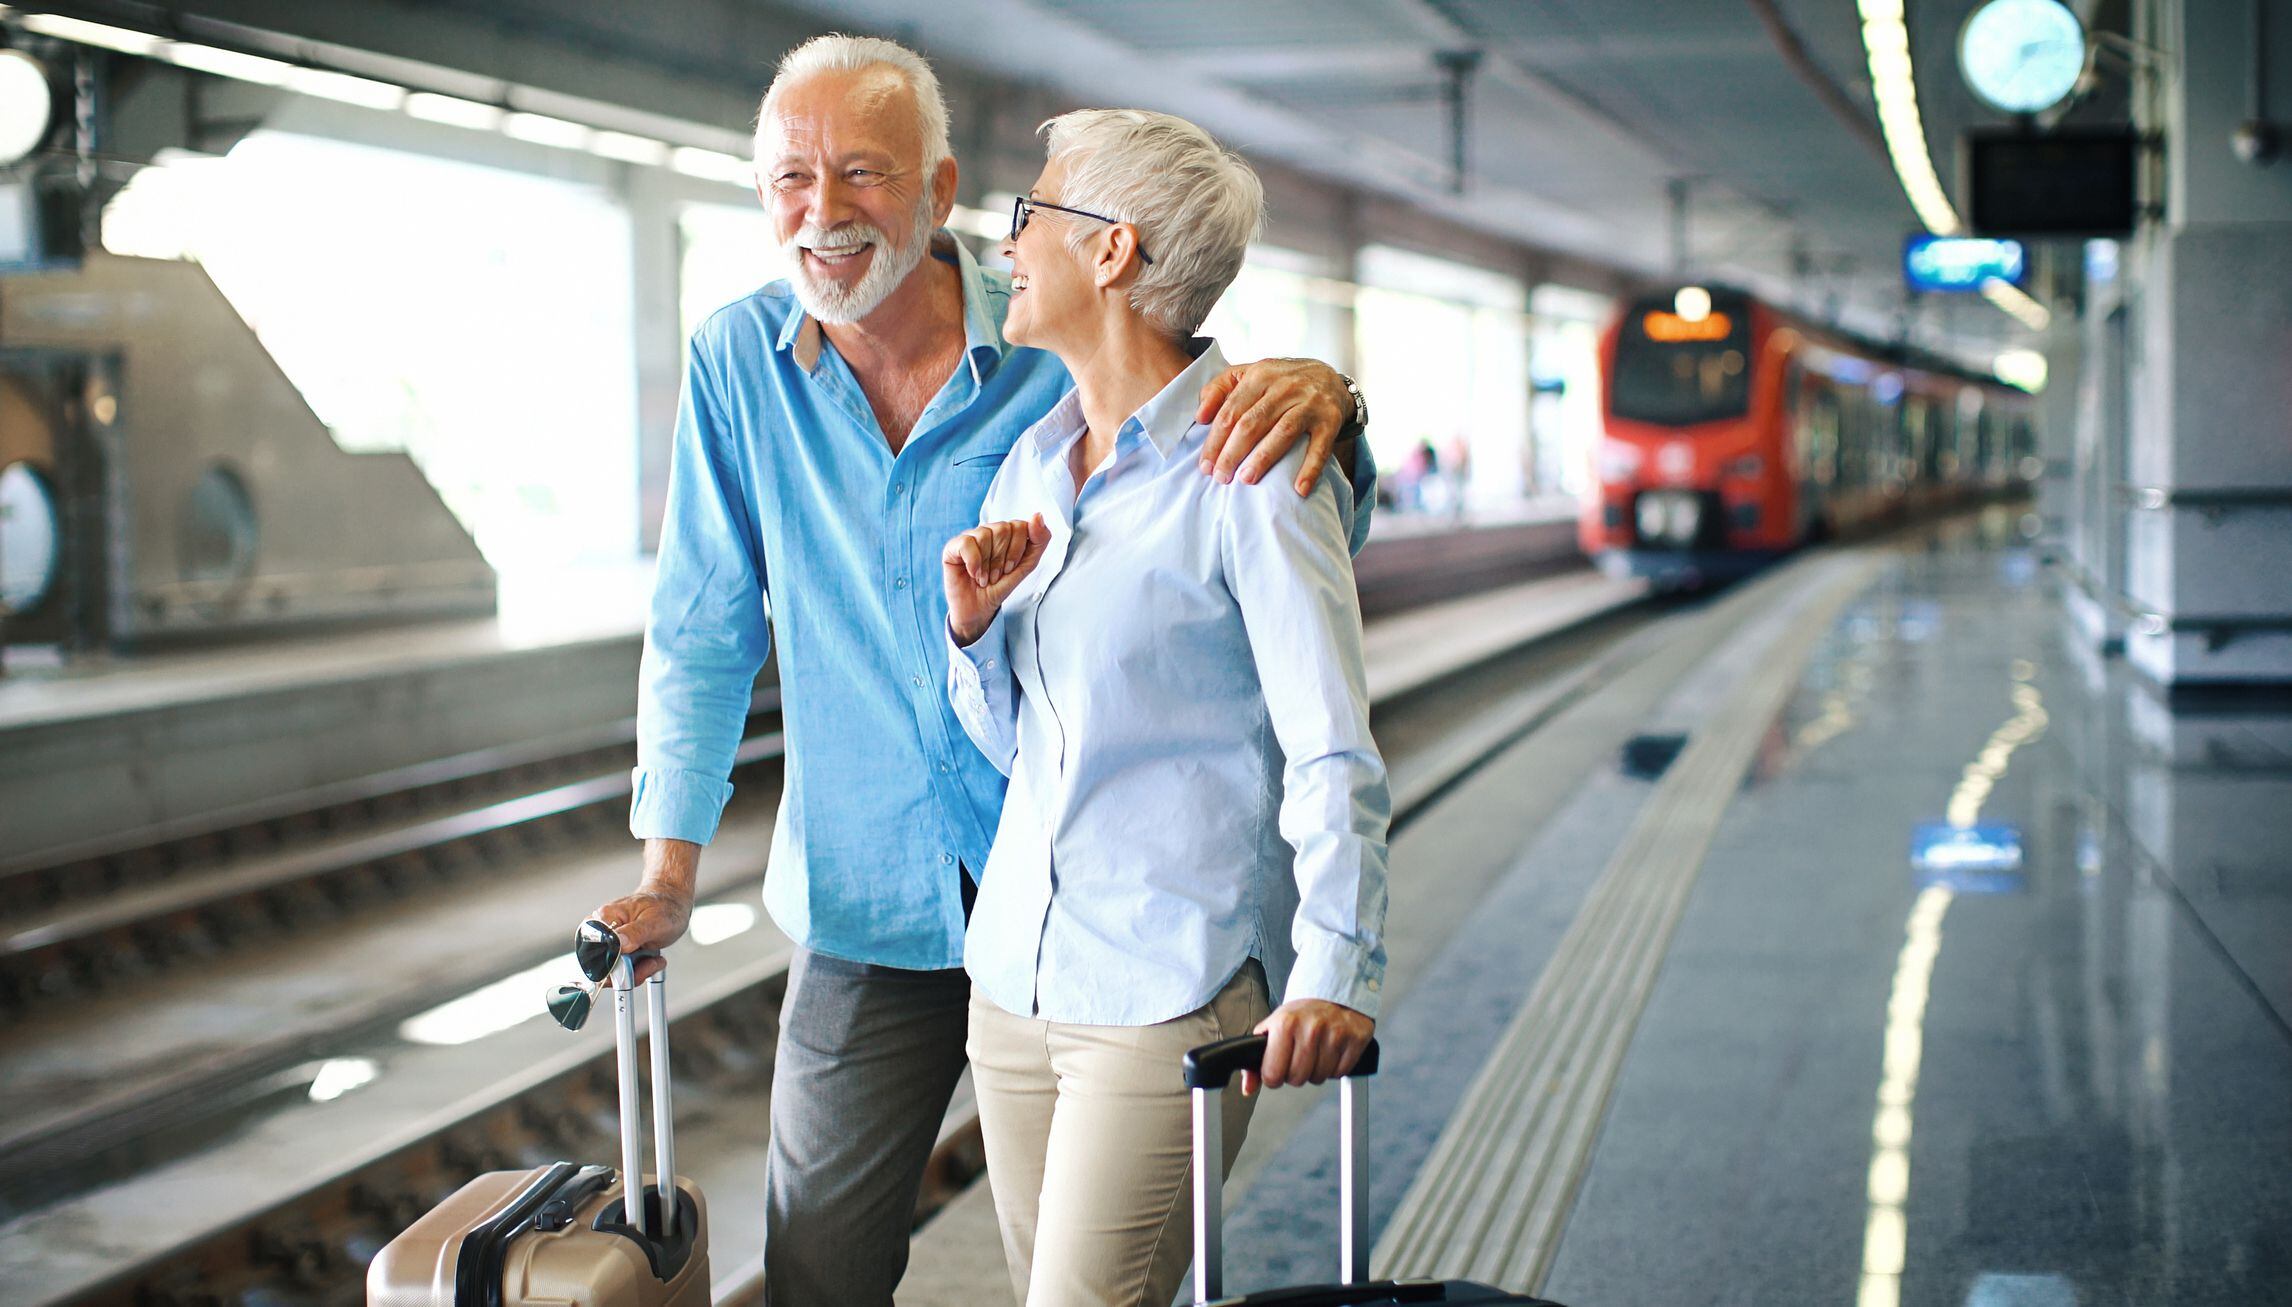 Una pareja de jubilados llega a la estación tras un viaje en tren. (Getty)